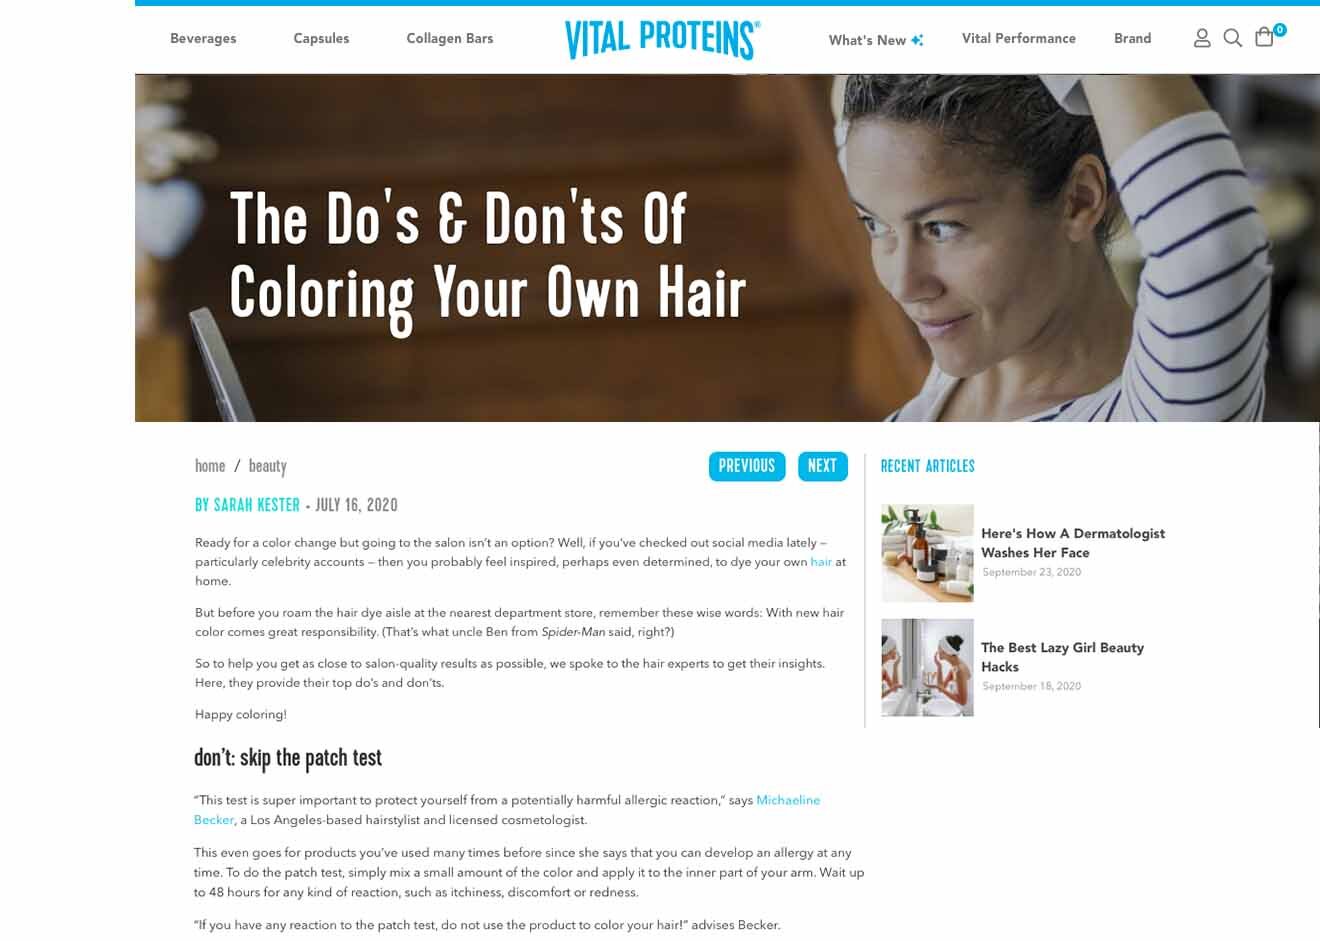 Vital Proteins' // At Home Haircolor